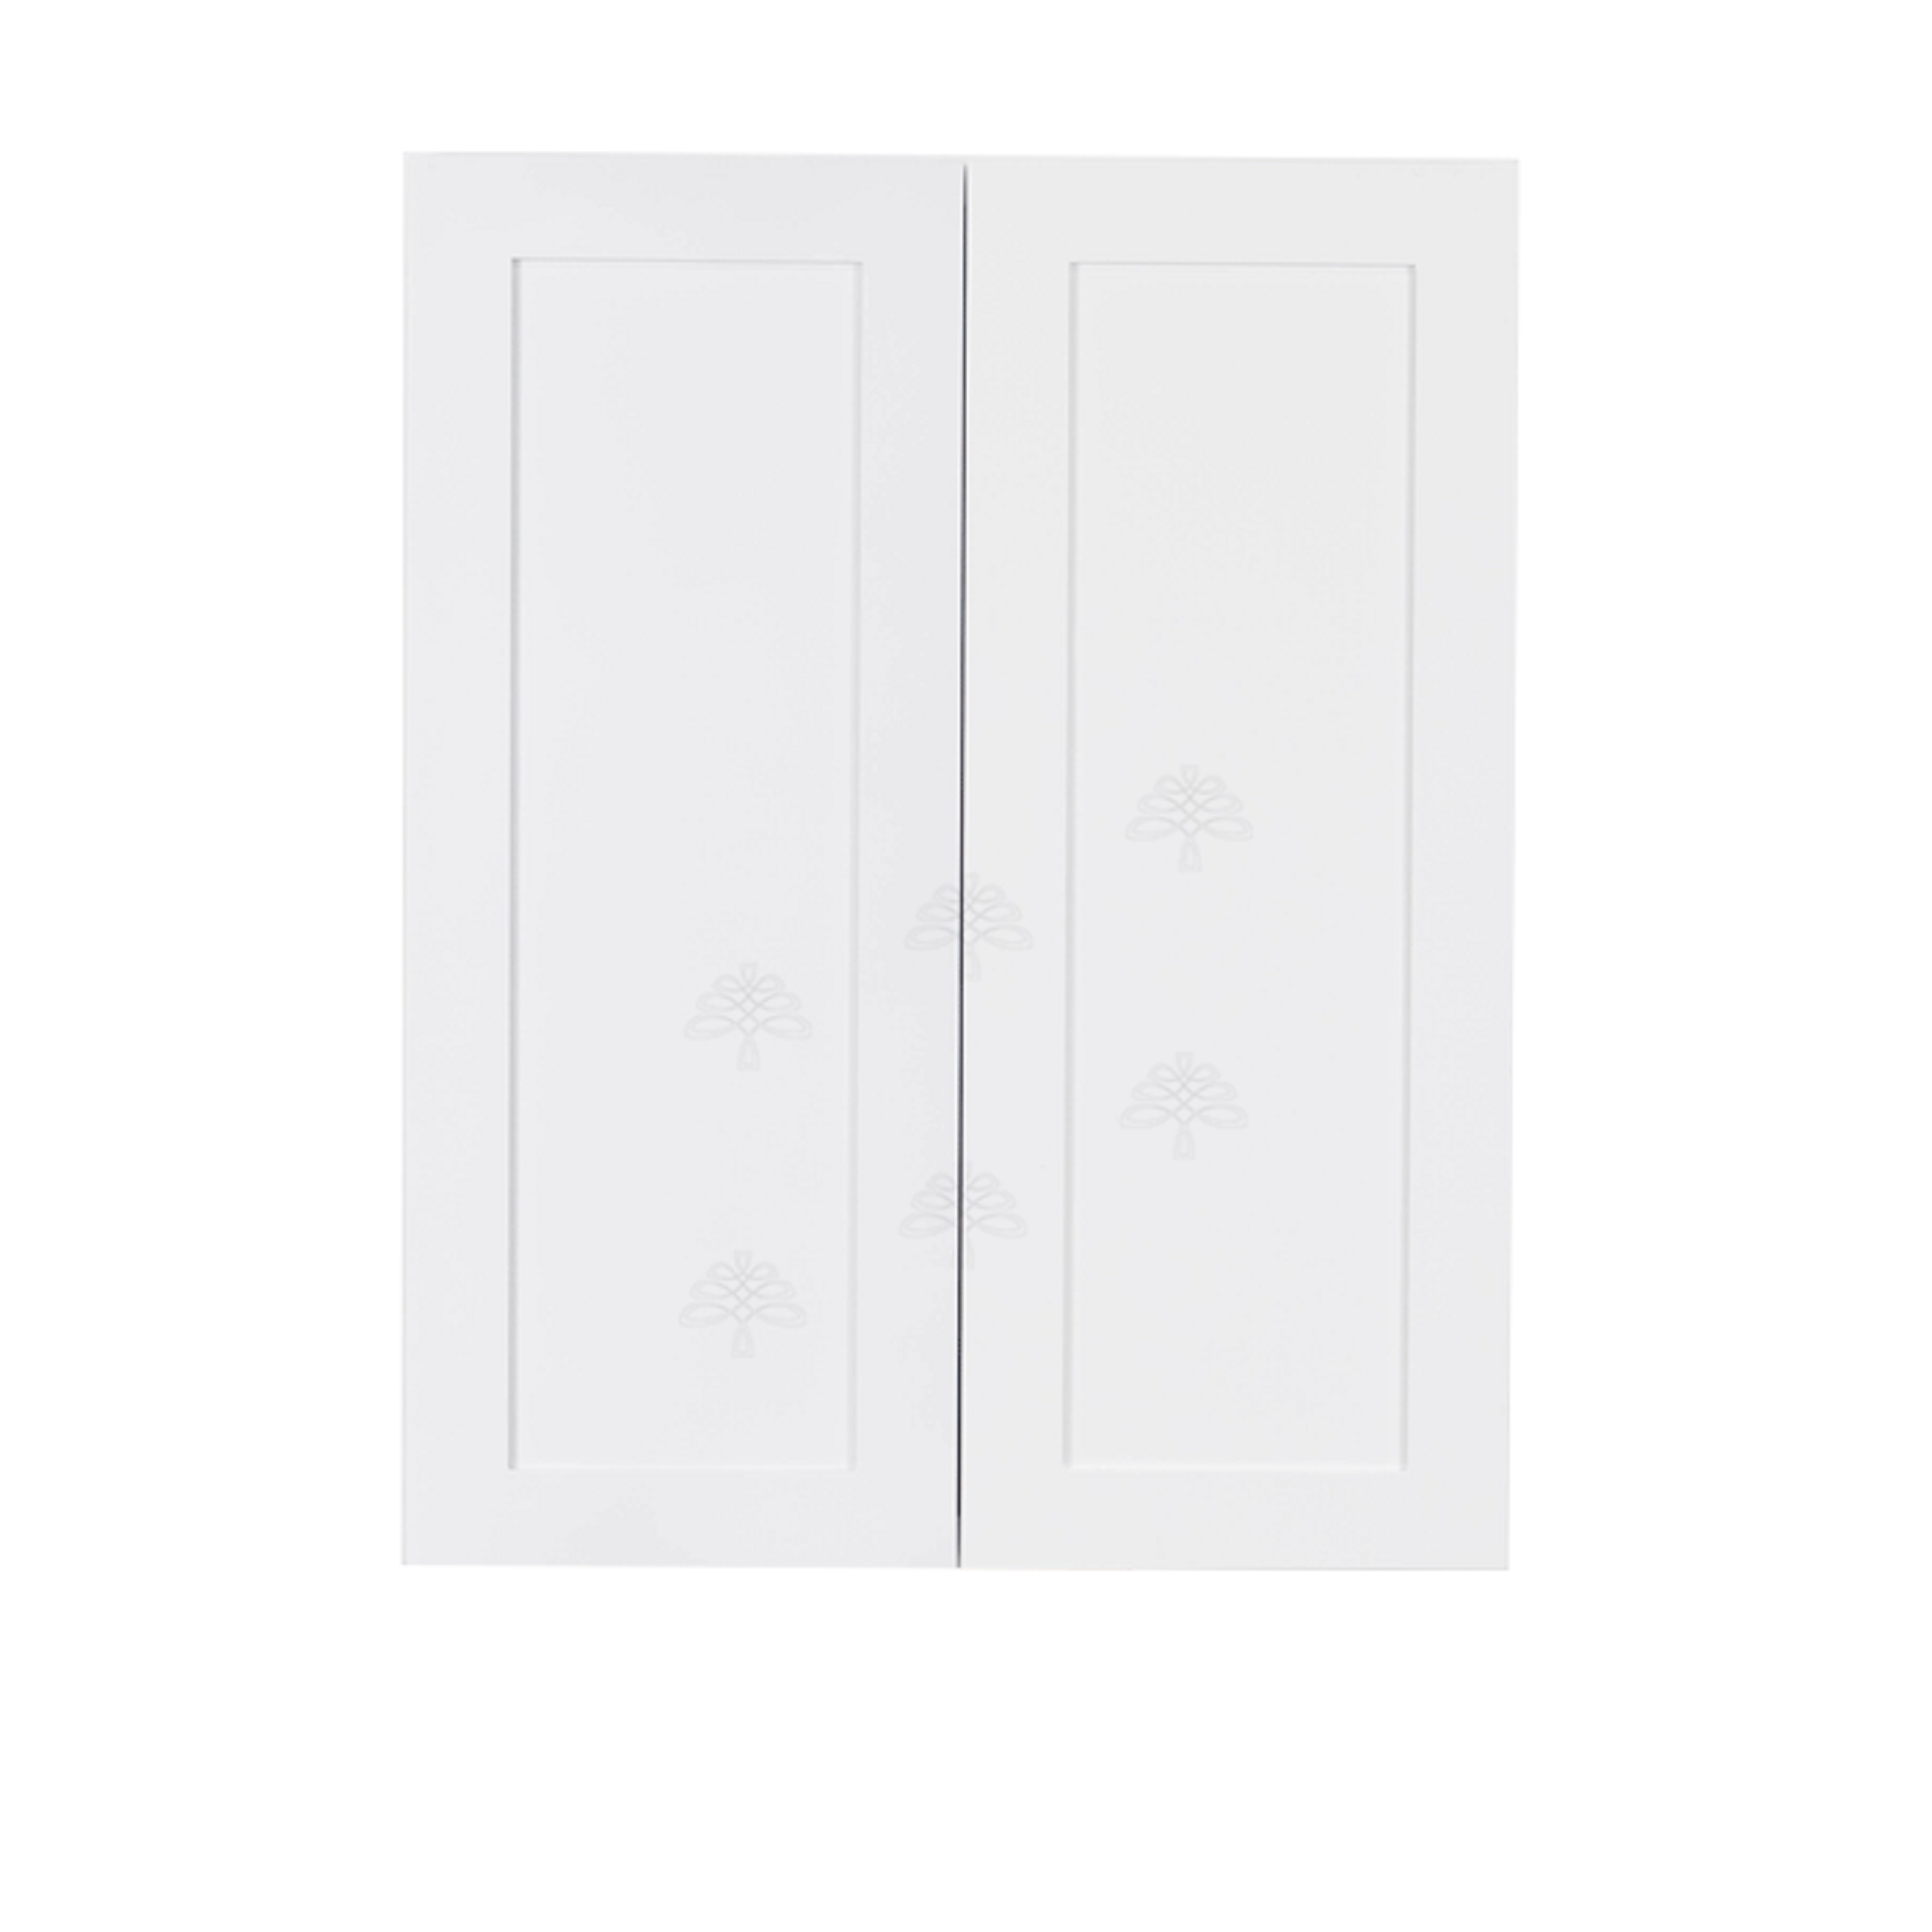 Lancaster Shaker White Wall Cabinet 2 Doors 3 Adjustable Shelves